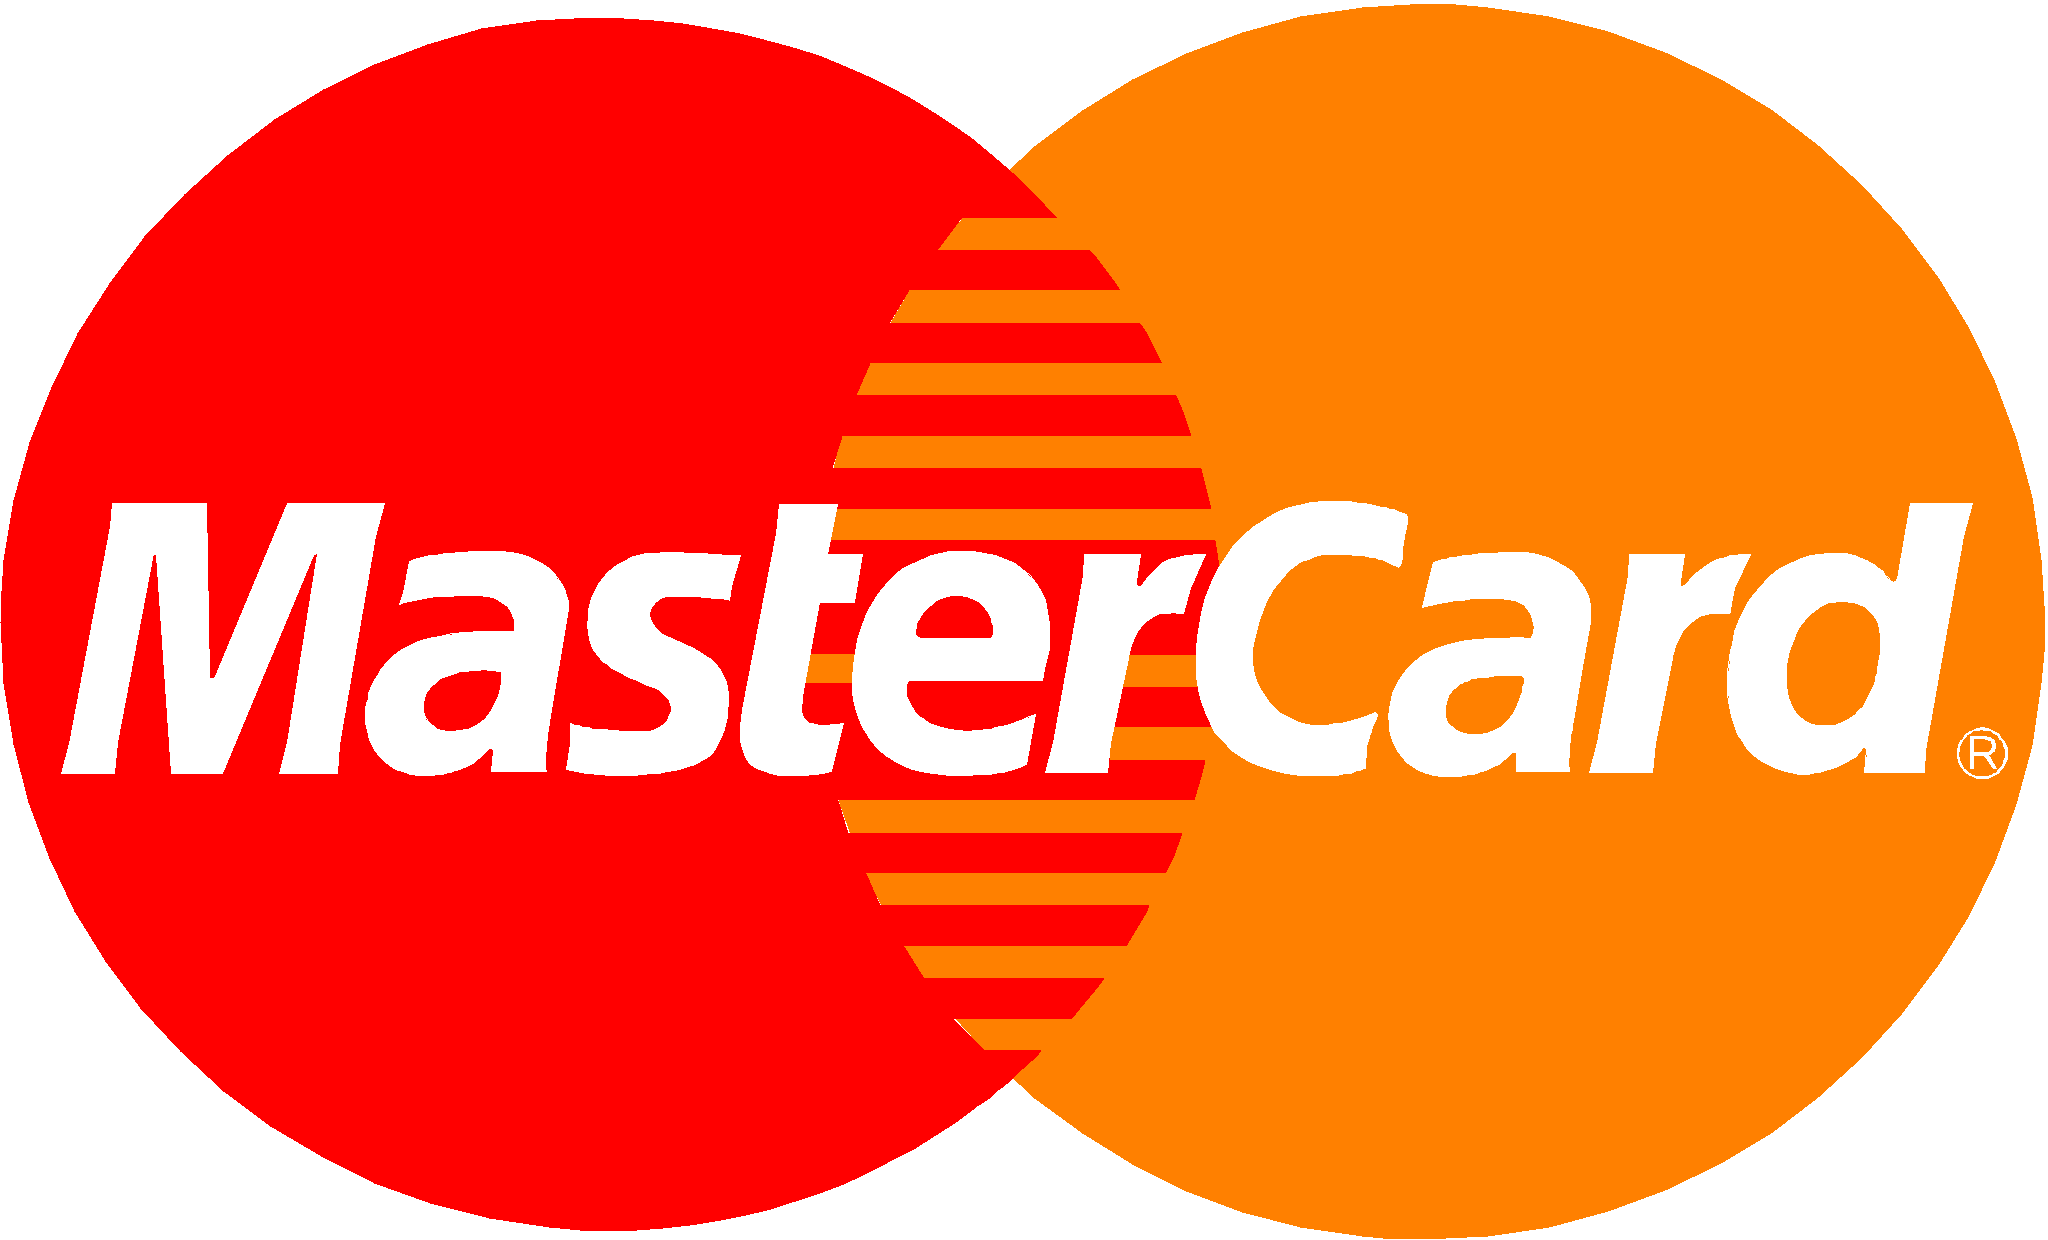 vector mastercard logo, Vecto